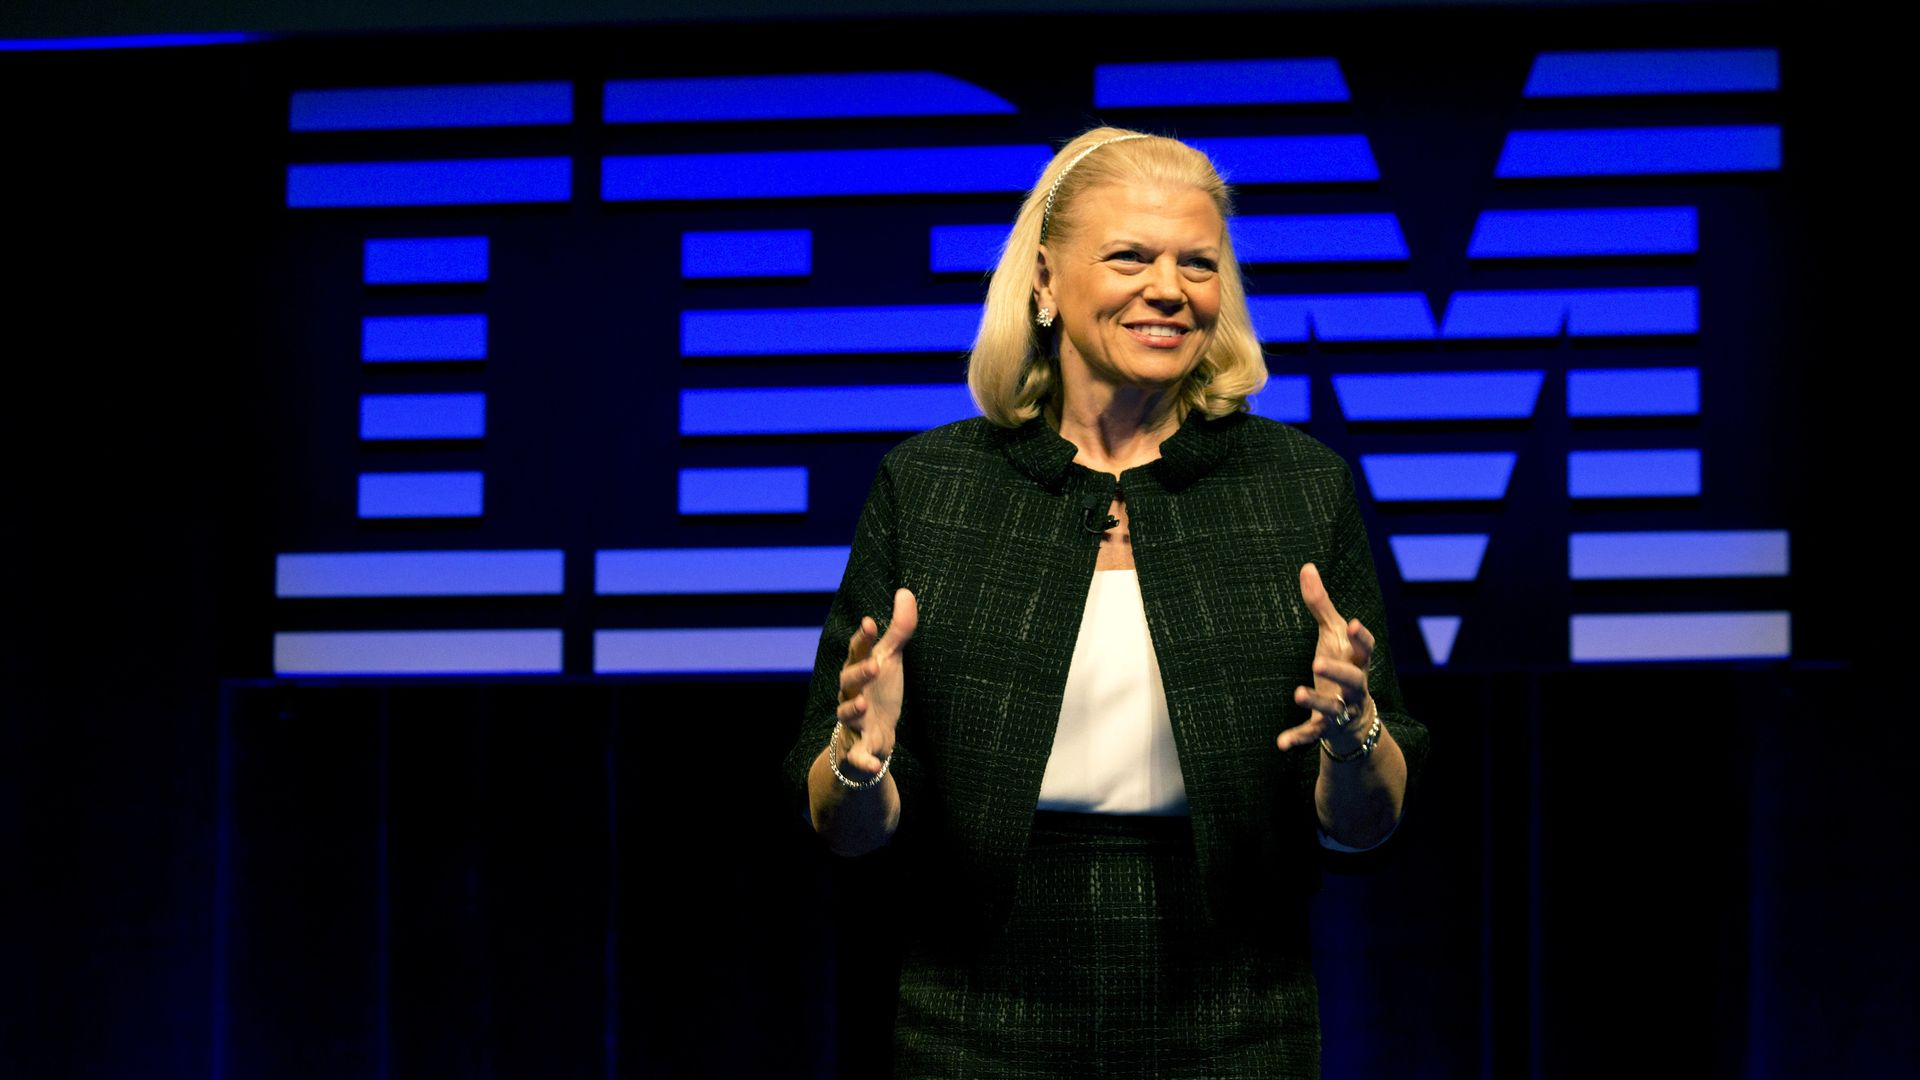 IBM CEO Ginni Rometty